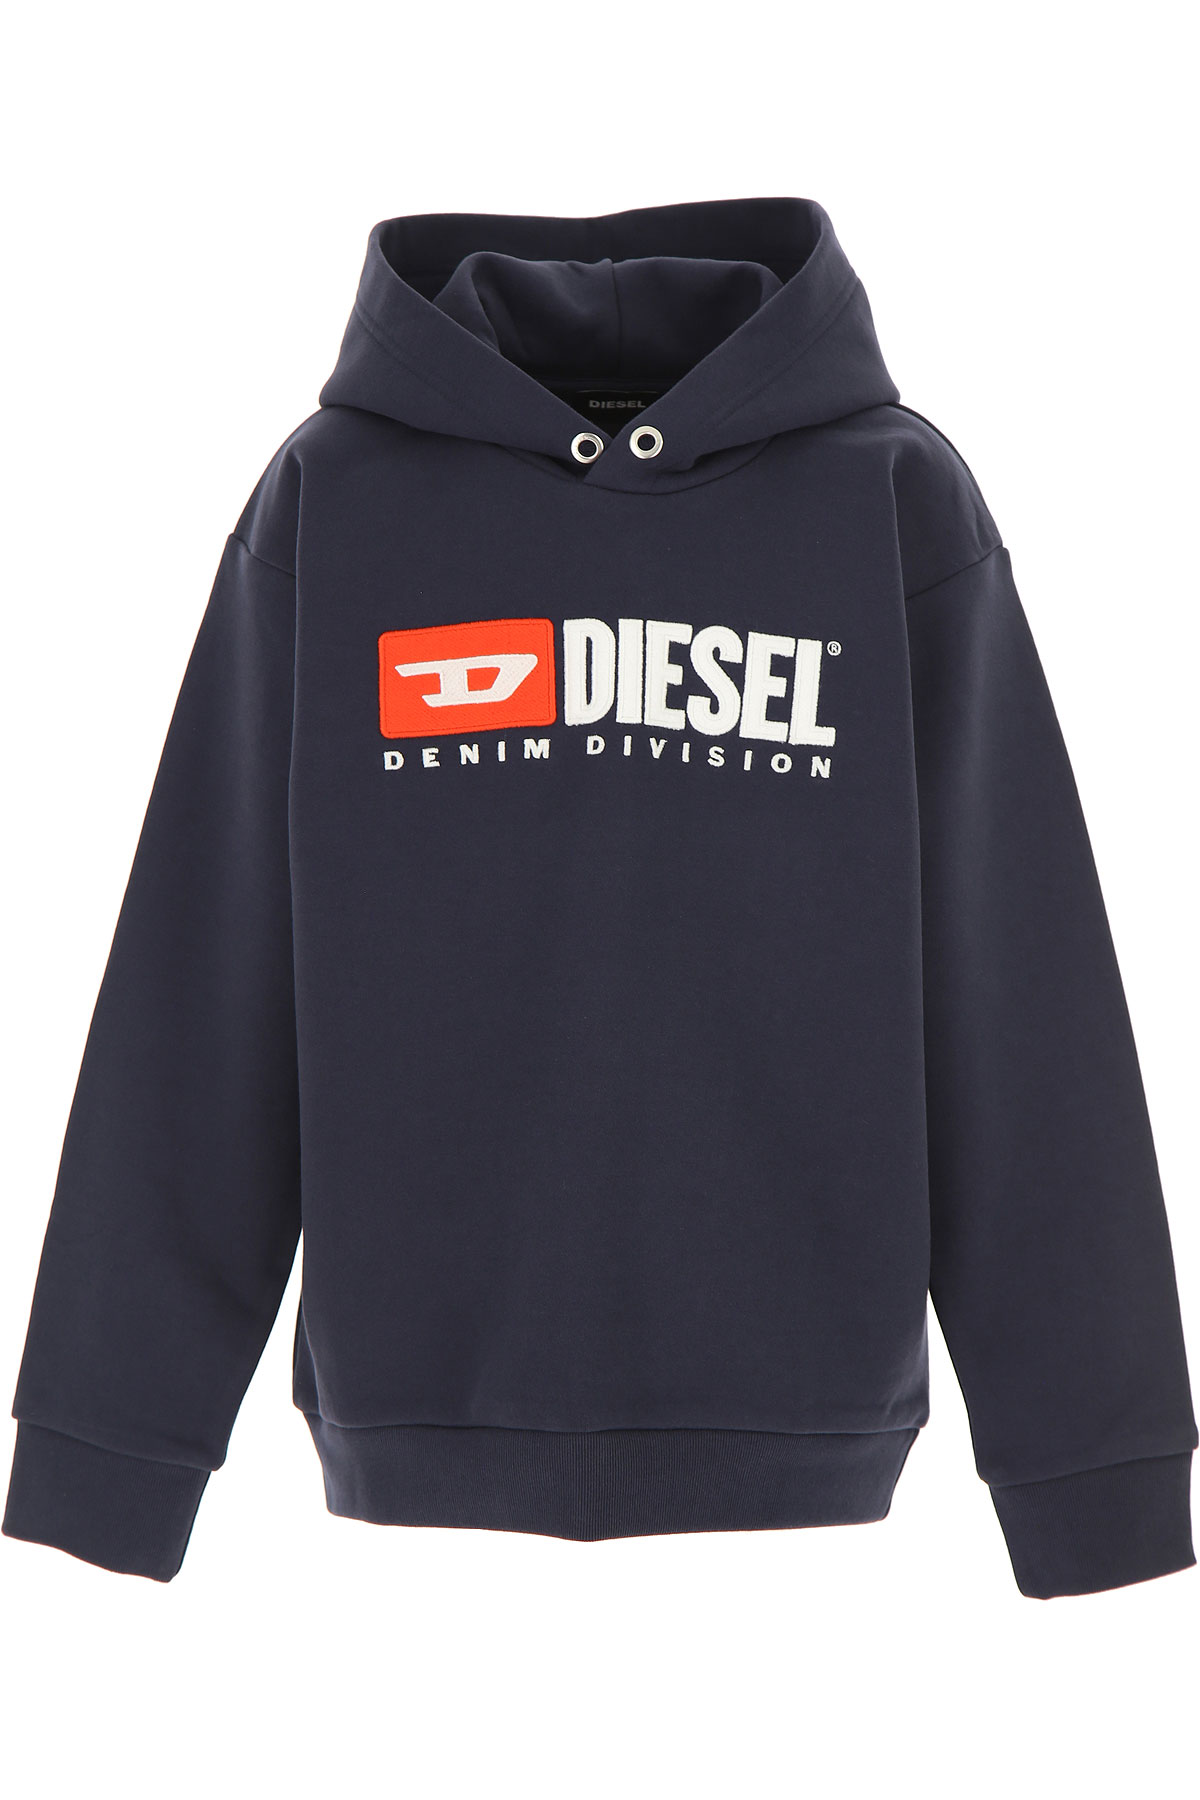 Diesel Kinder Sweatshirt & Kapuzenpullover für Jungen Günstig im Sale, Dunkel Marineblau, Baumwolle, 2017, 10Y 12Y 14Y 16Y 8Y